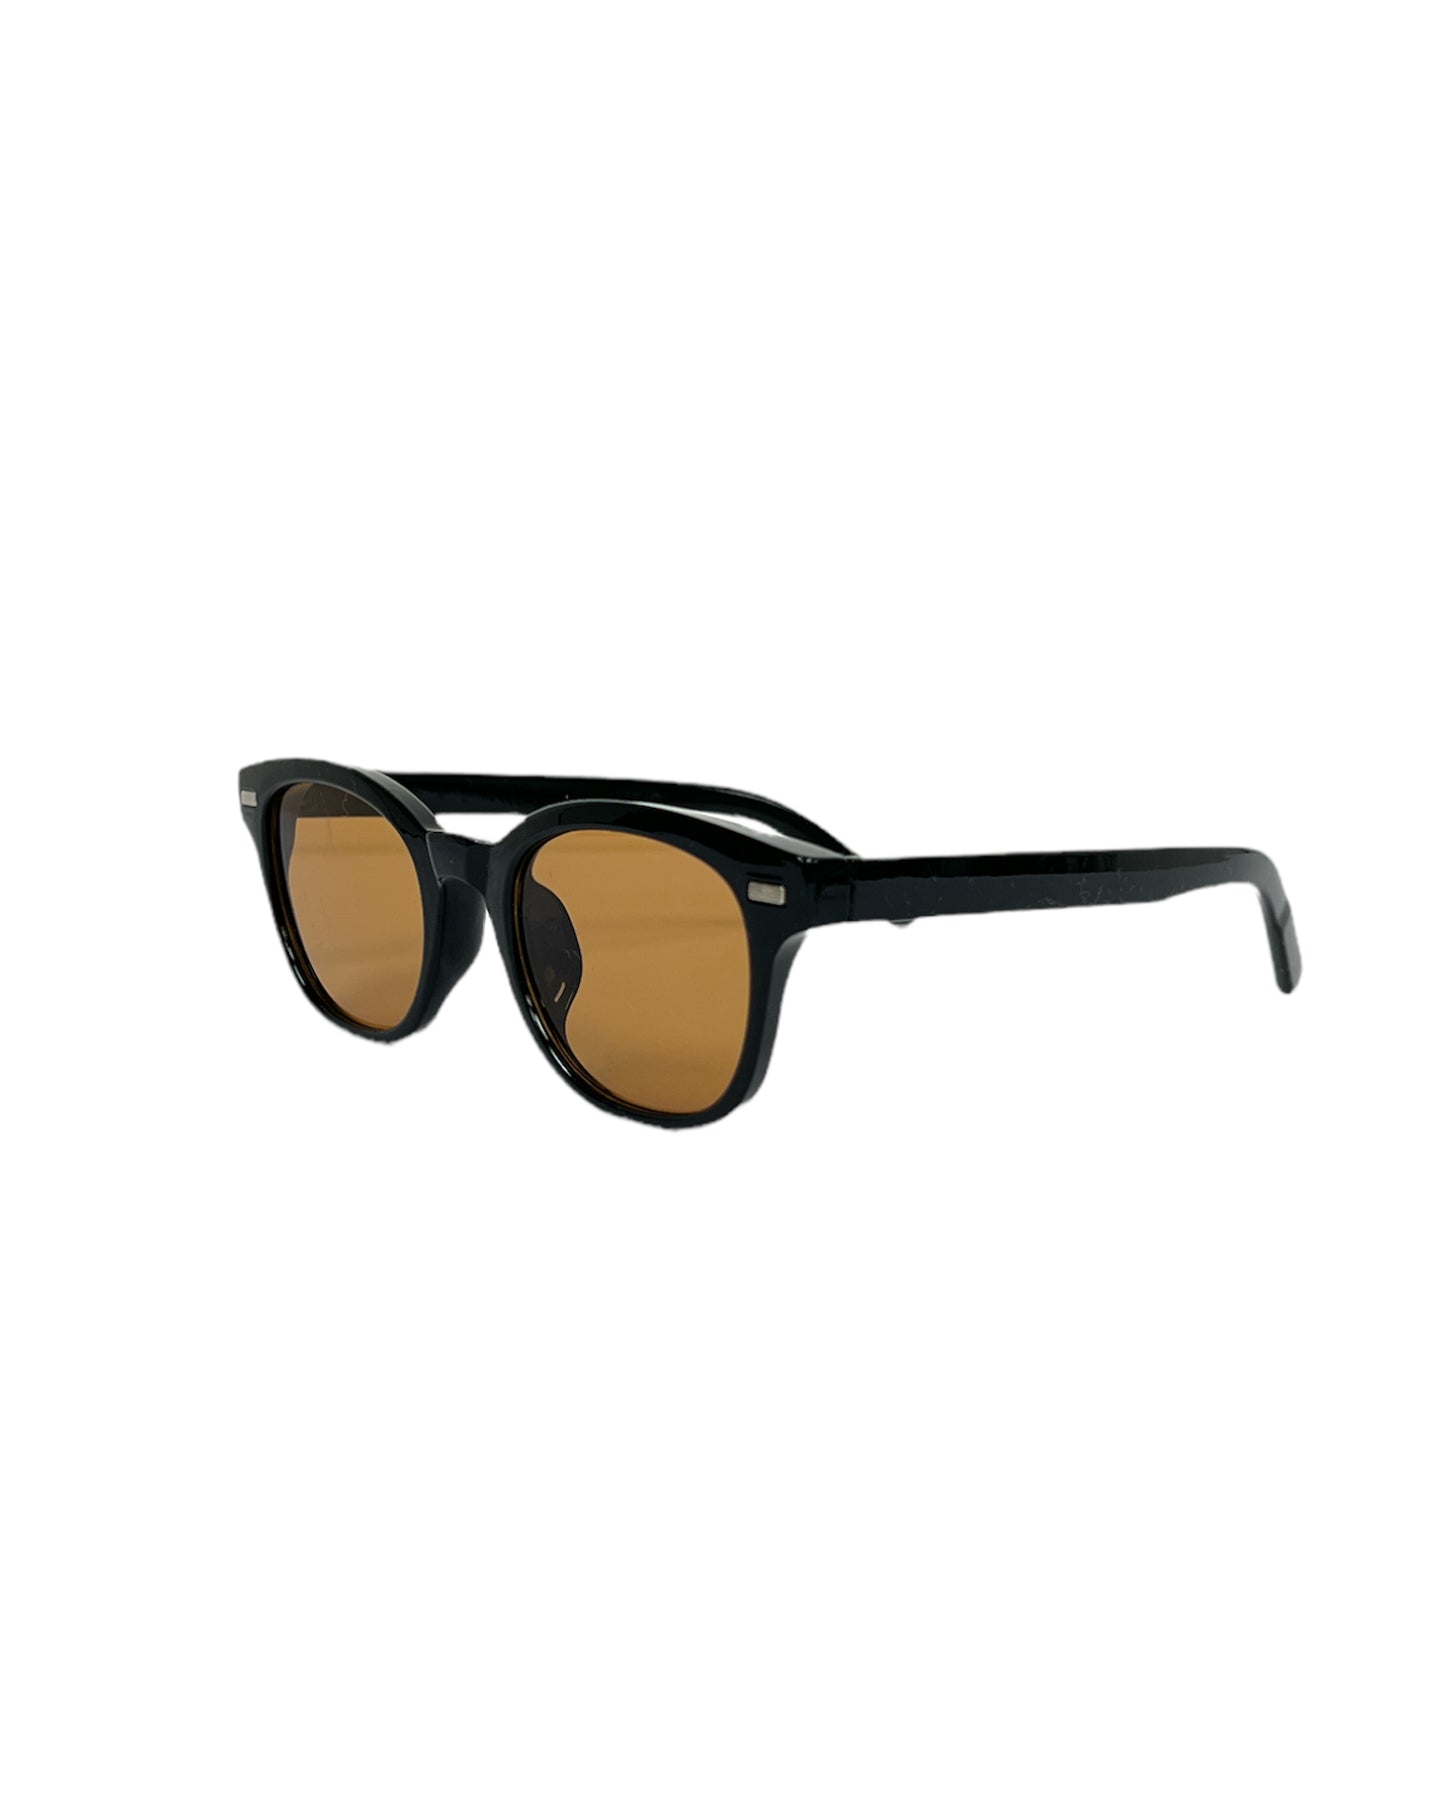 black frame & tint lenses sunglasses *pre-order*